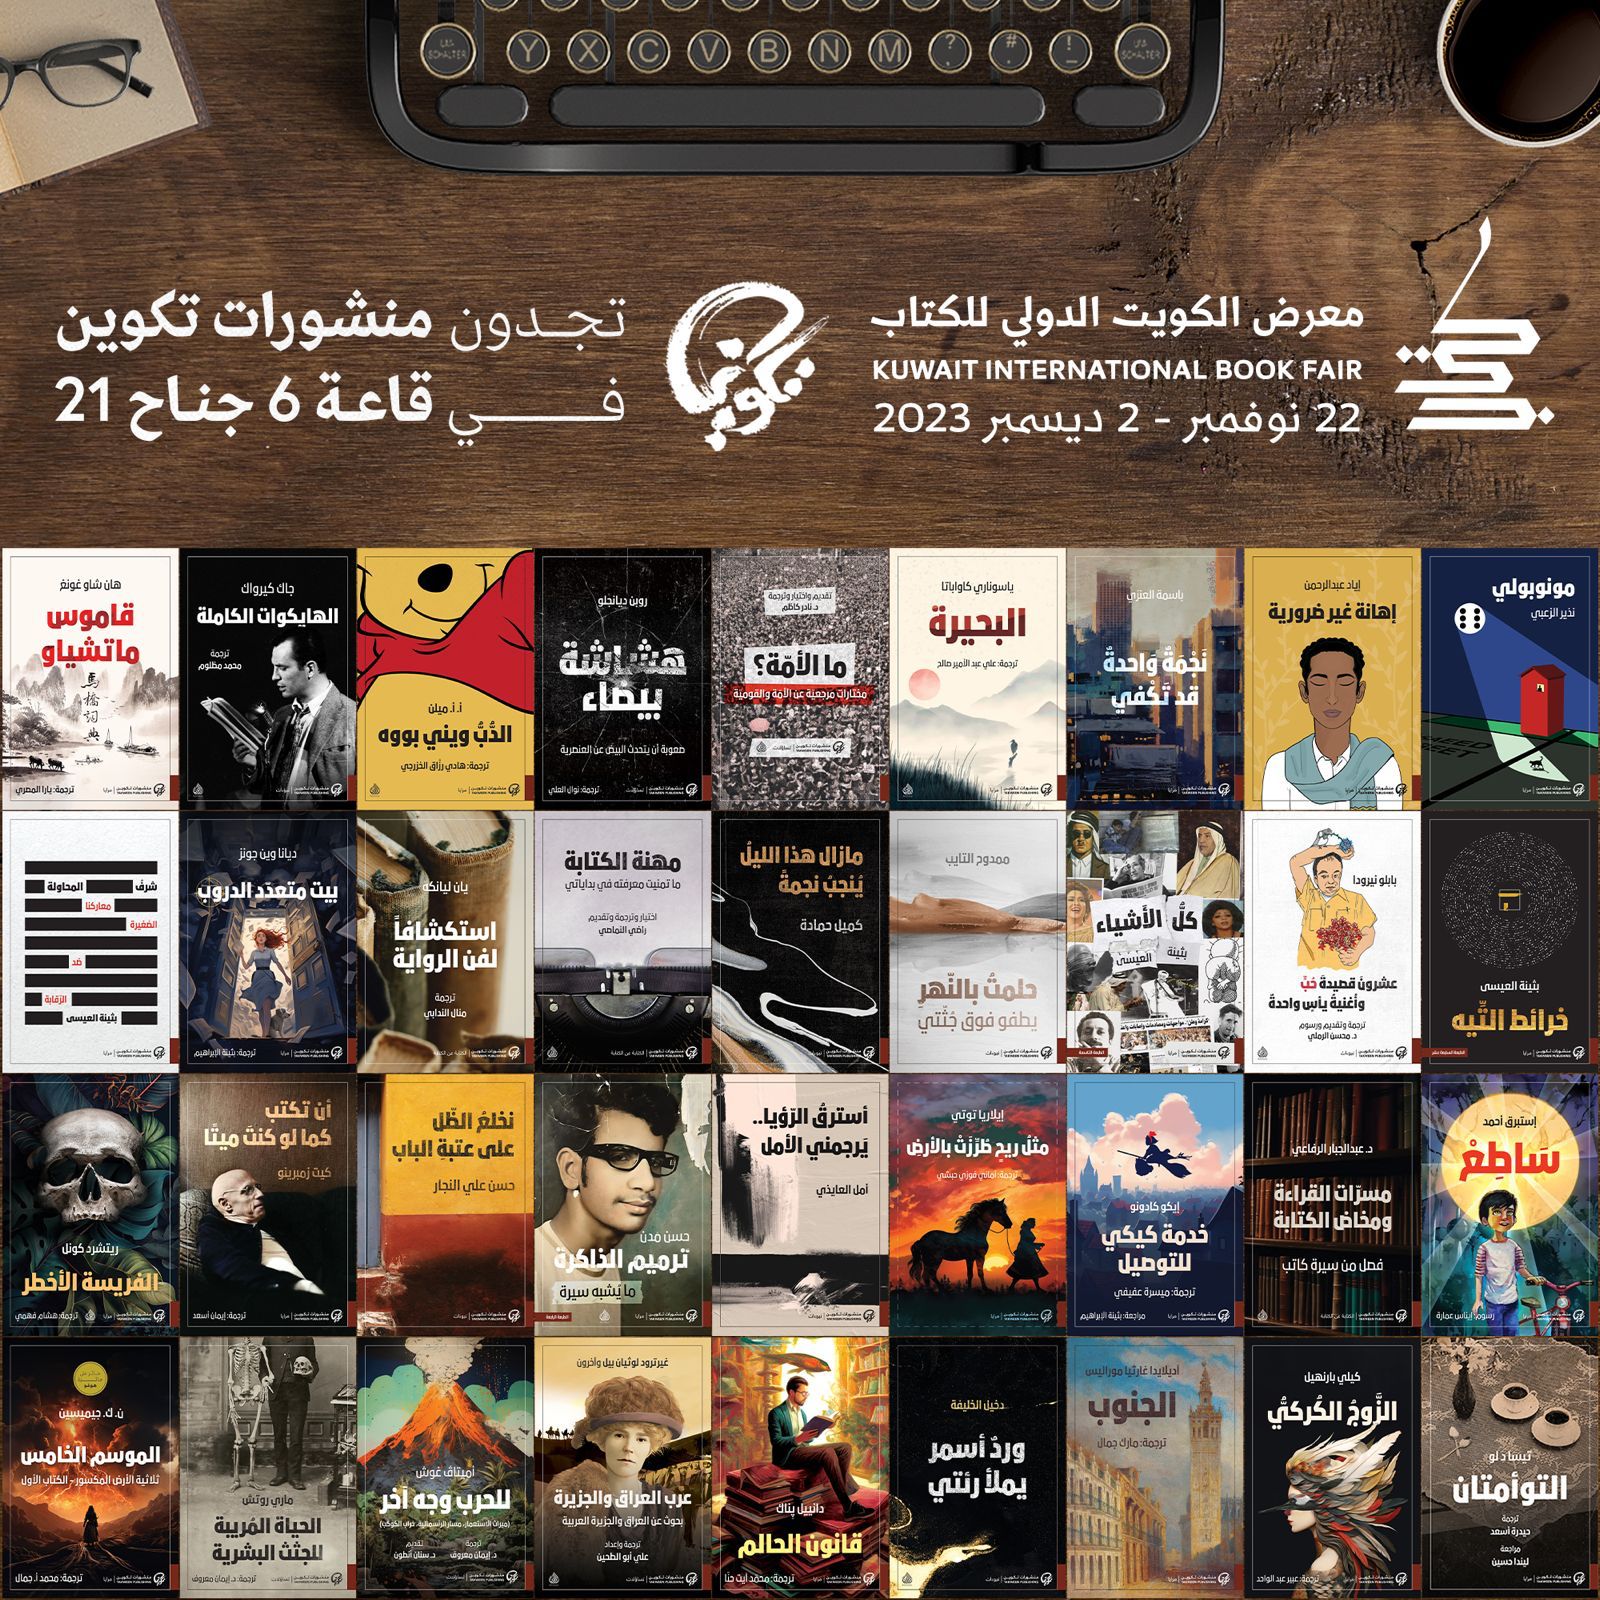 منشورات تكوين في معرض الكويت الدولي للكتاب